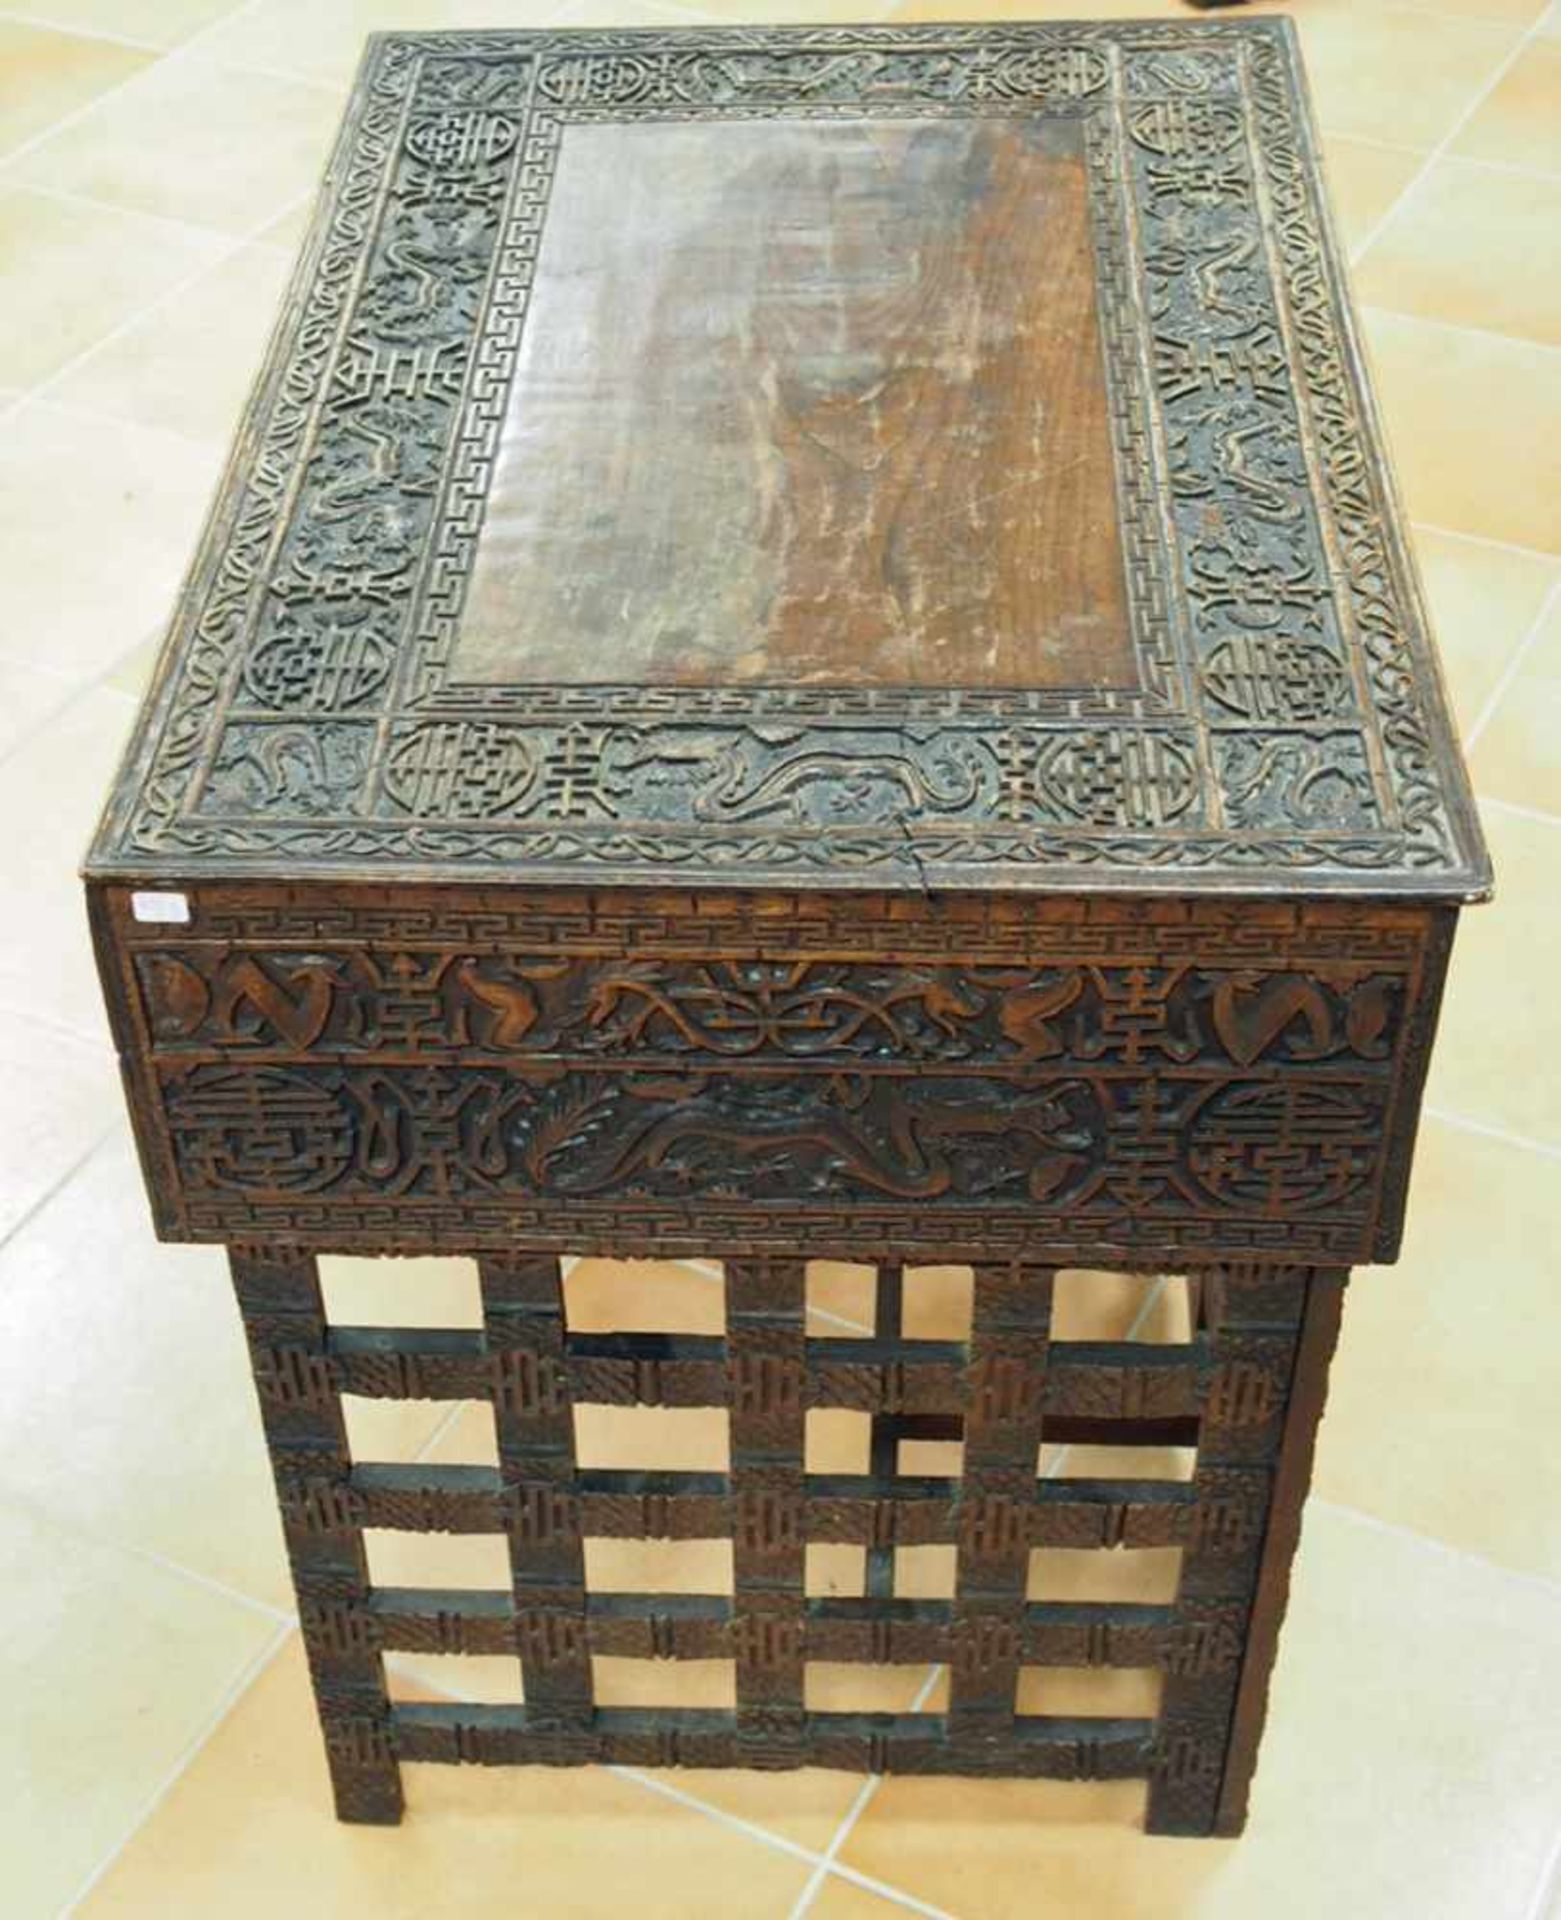 Chinesischer Tisch mit Schublademit Drachenmotiven, Holz, geschnitzt, um 1850, 62 x 68 x 47 cm - Bild 3 aus 3